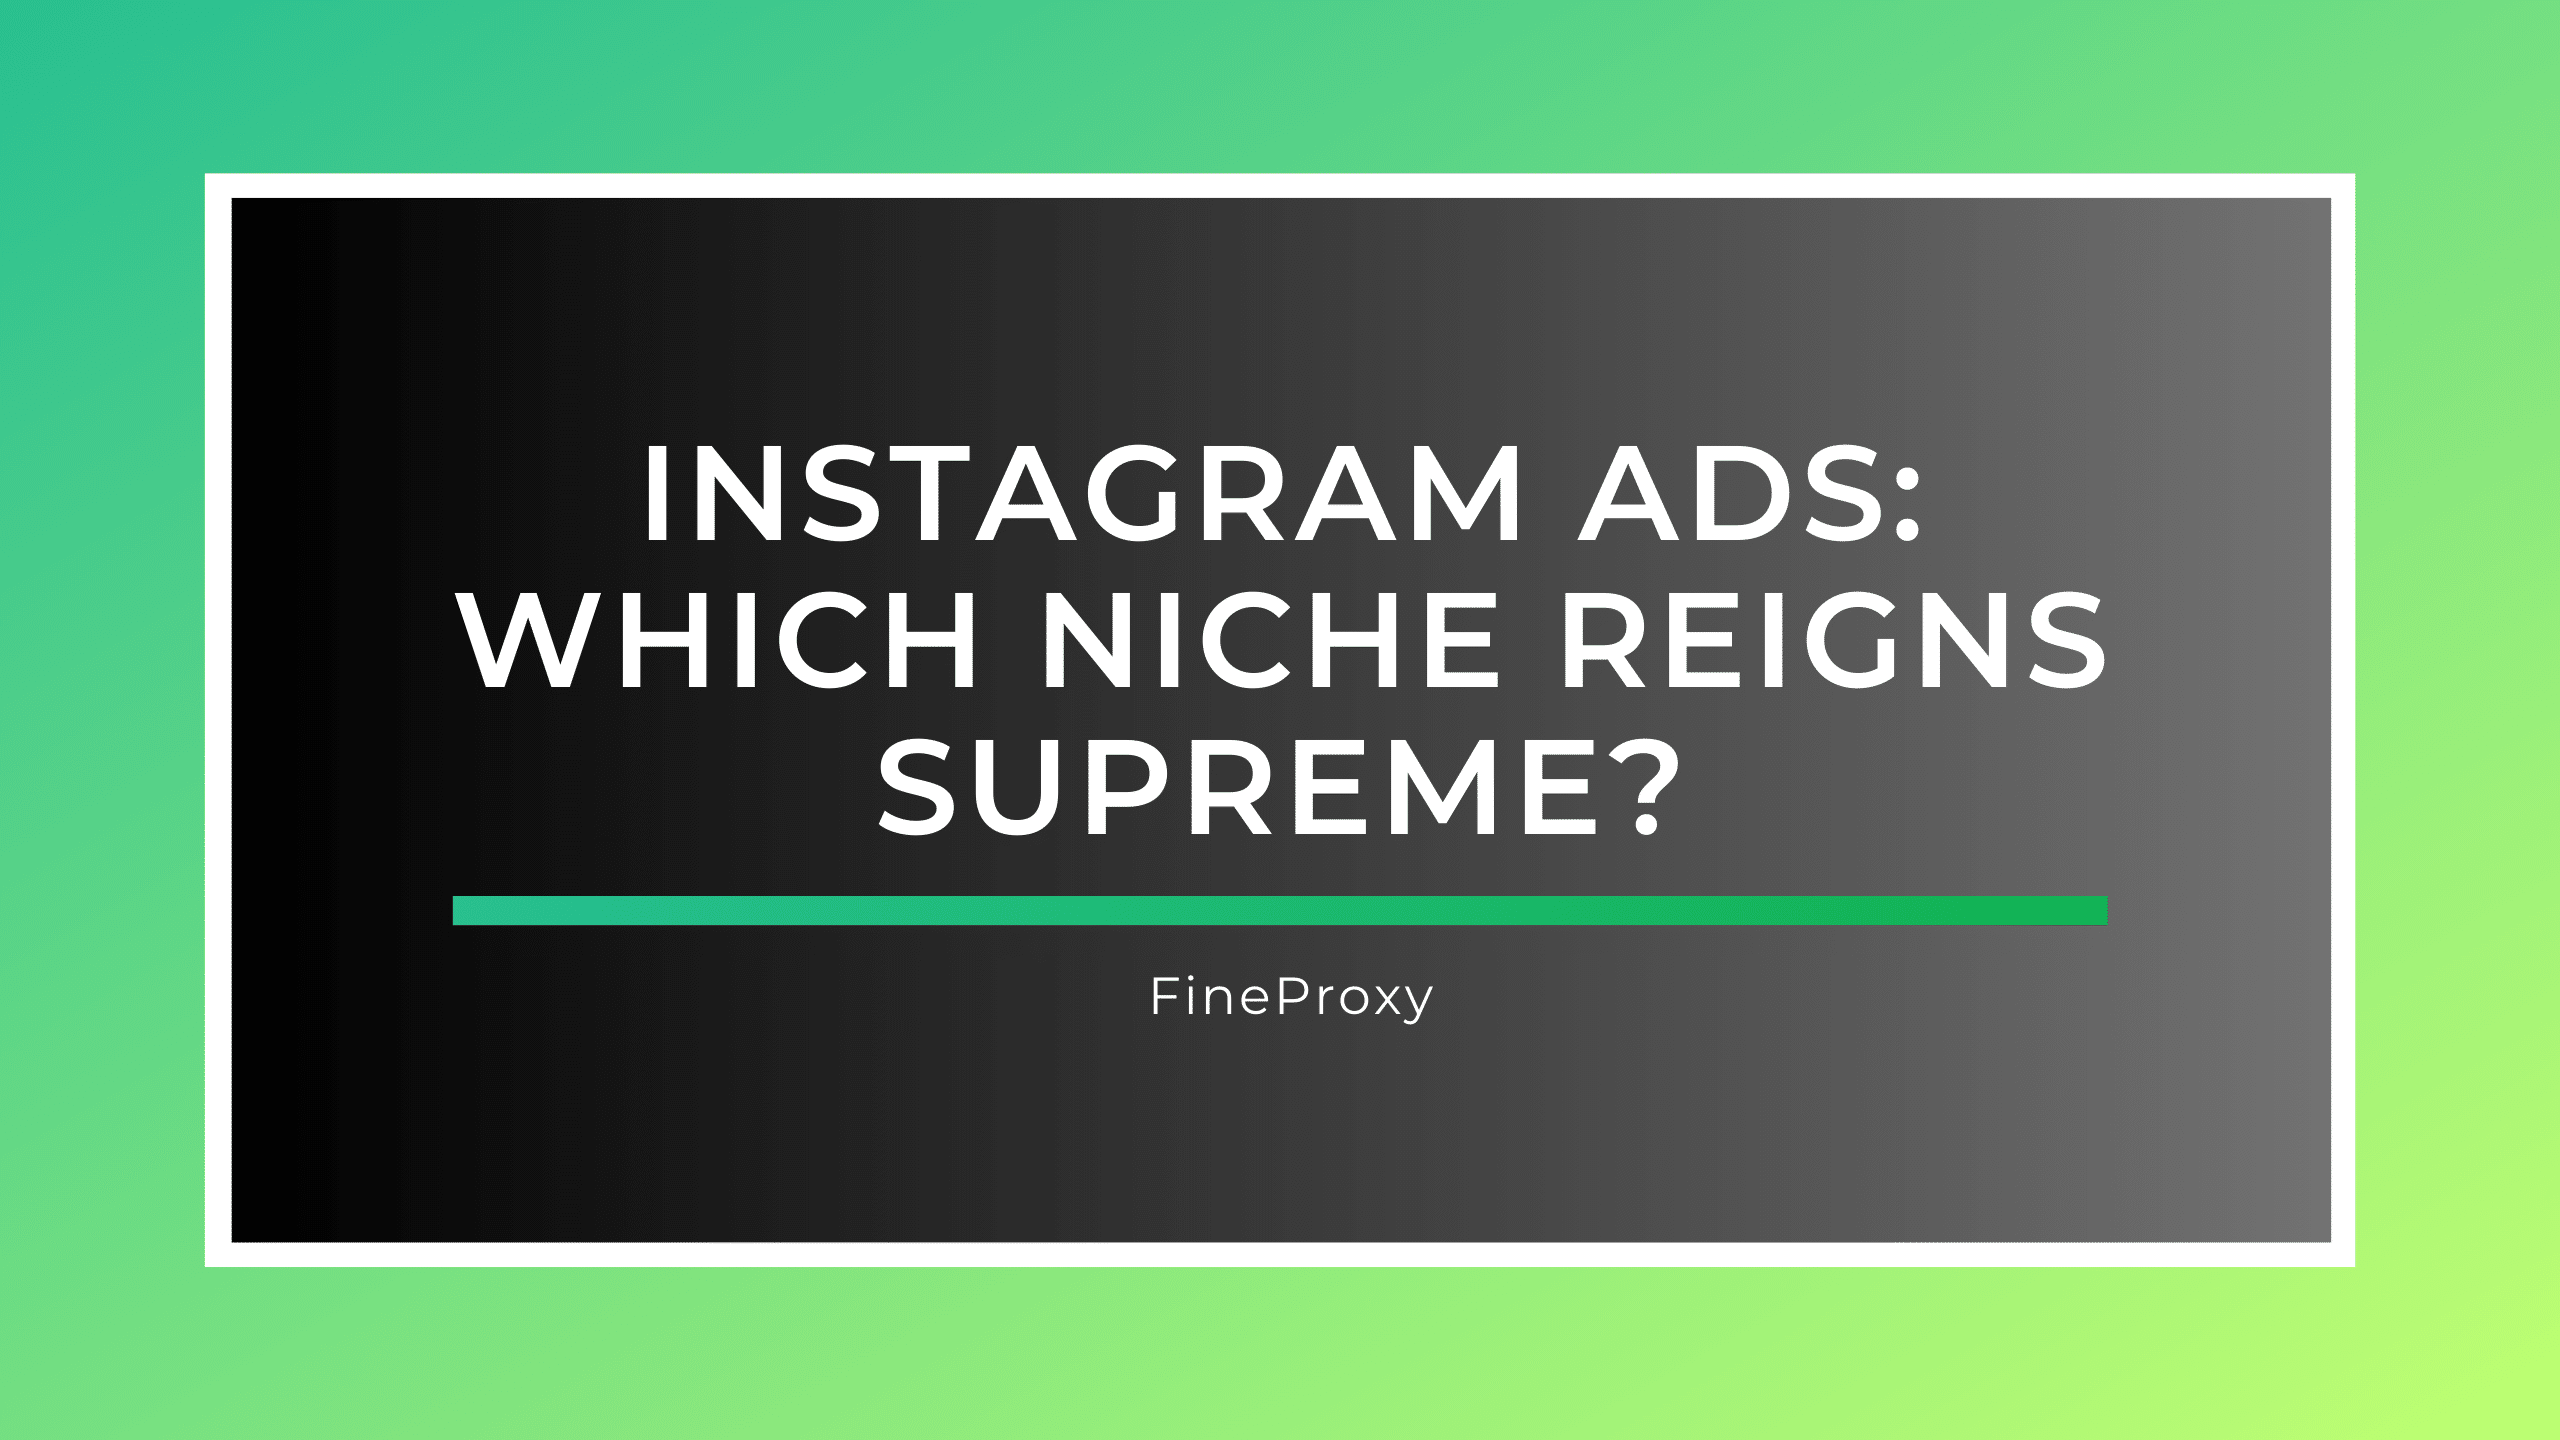 Anúncios do Instagram: qual nicho reina supremo?